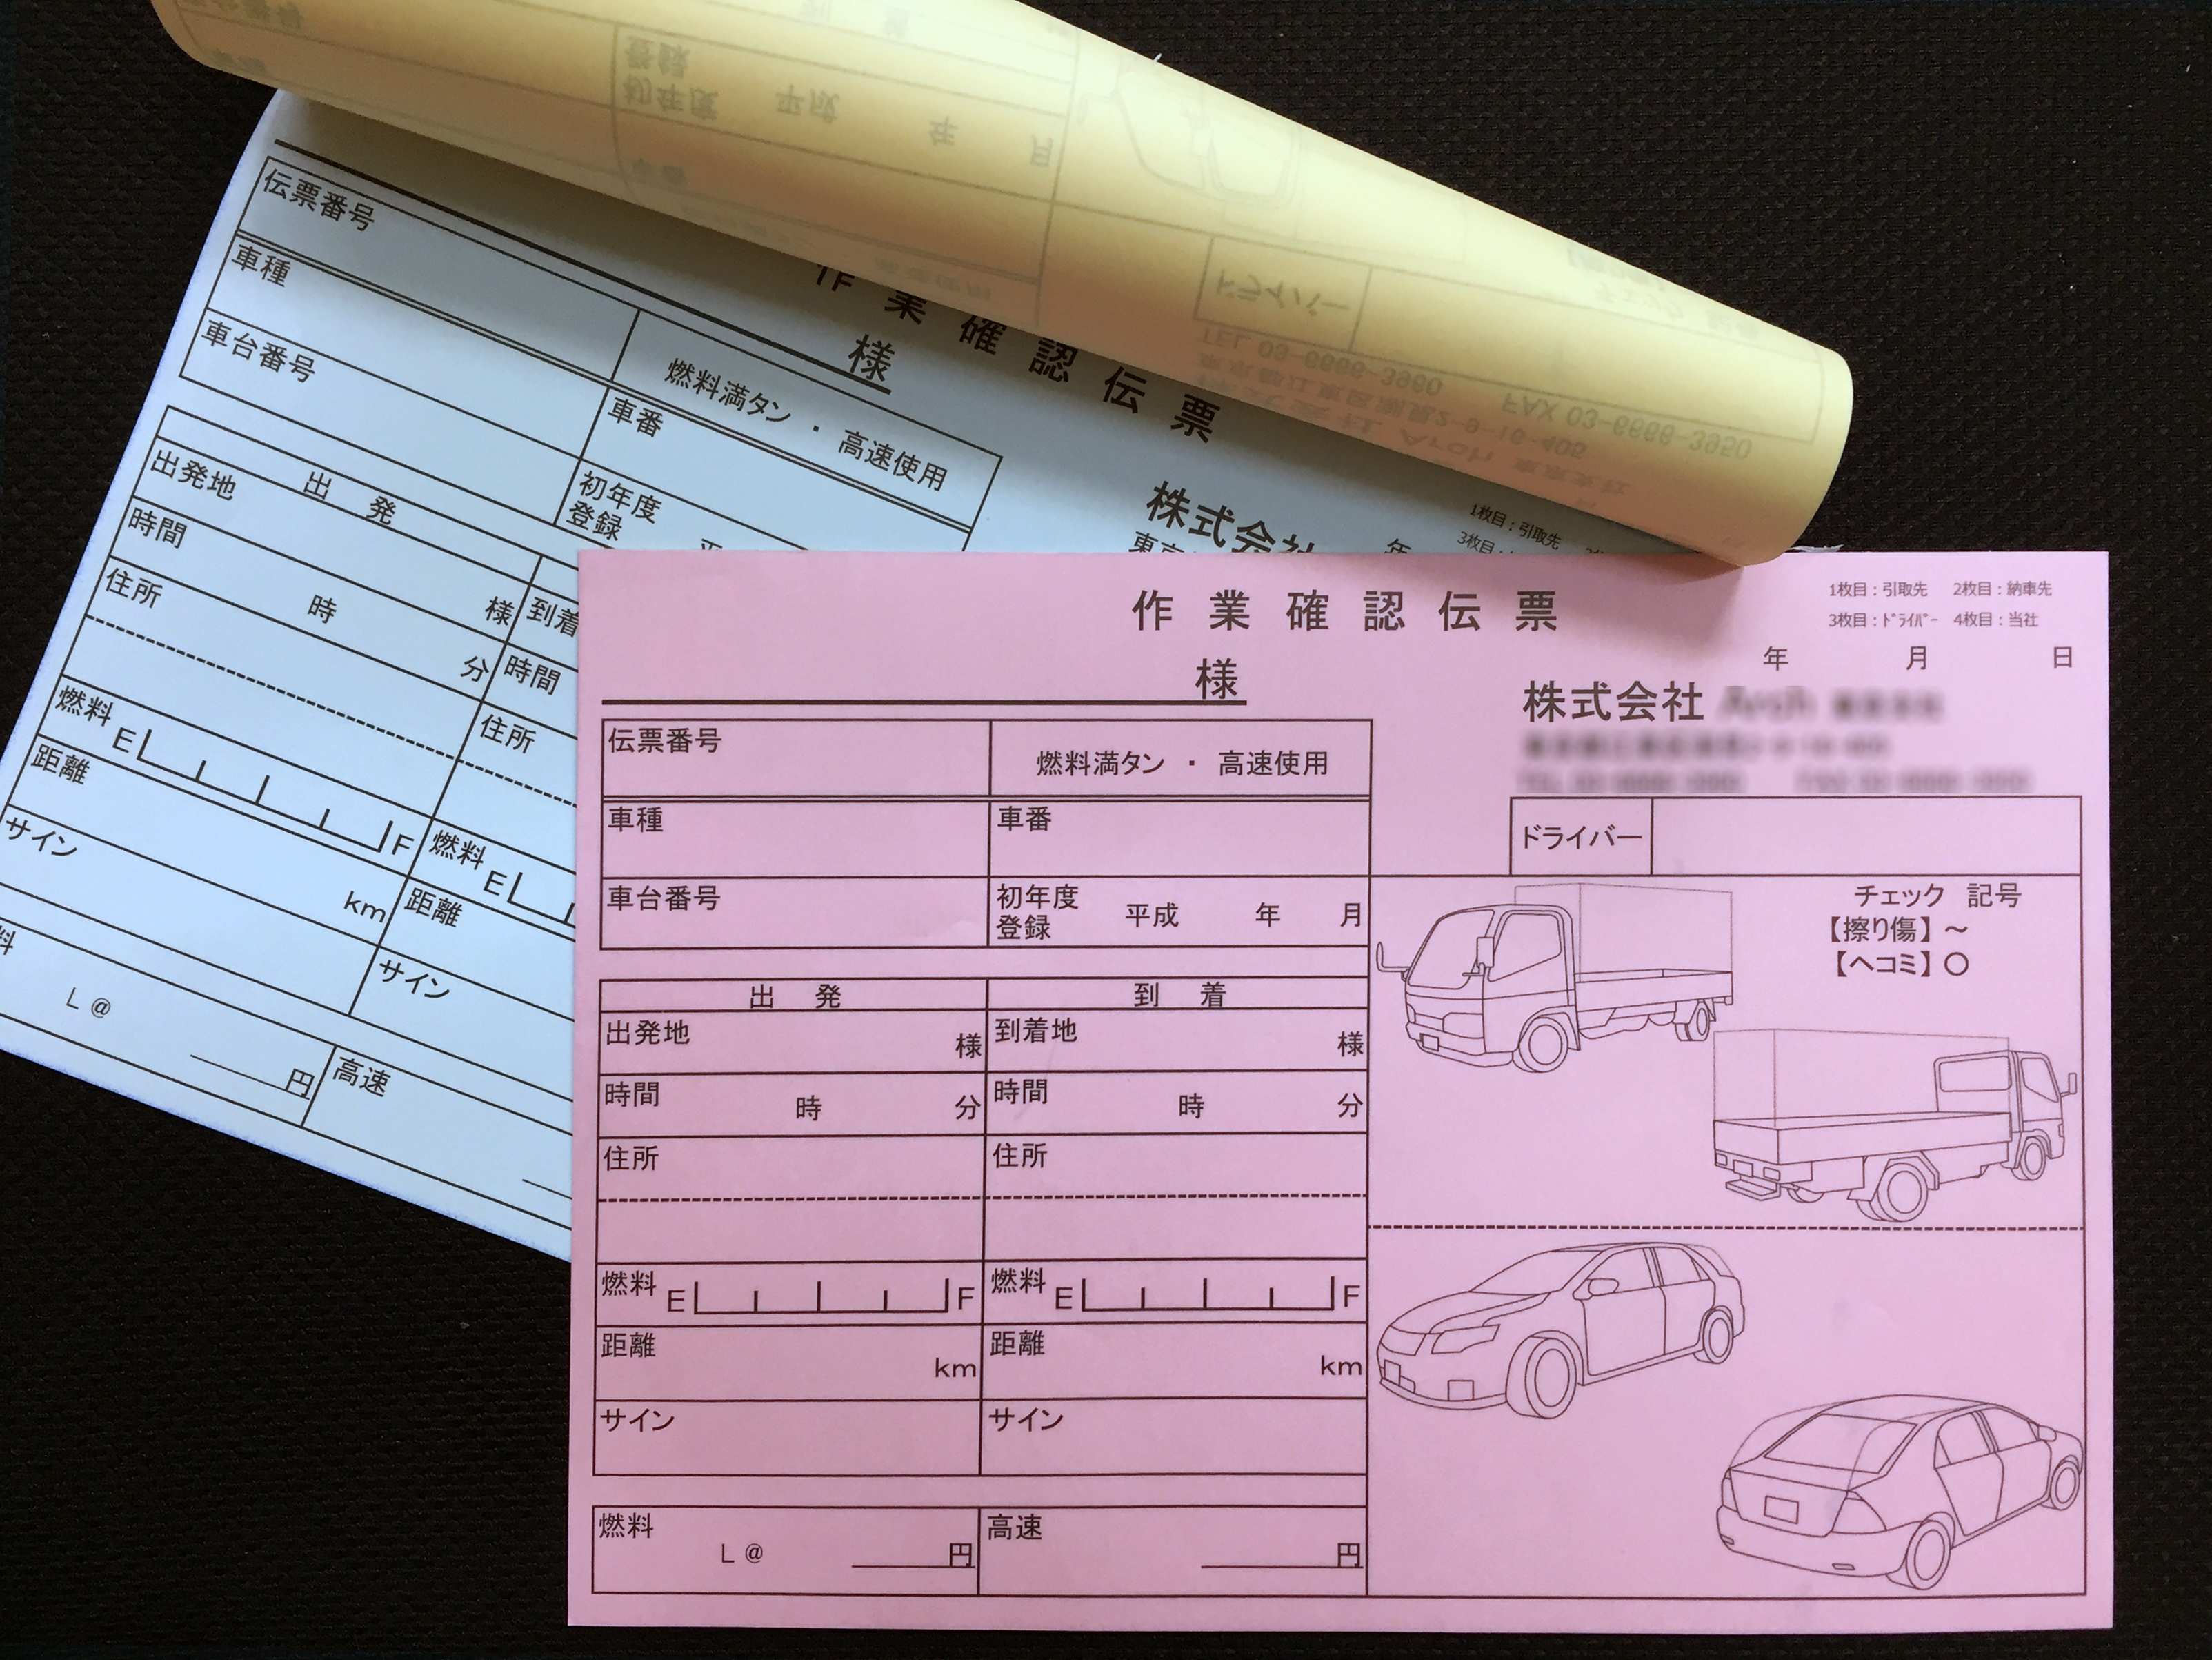 自動車陸送業務で使用する作業確認伝票(４枚複写)の伝票作成実績